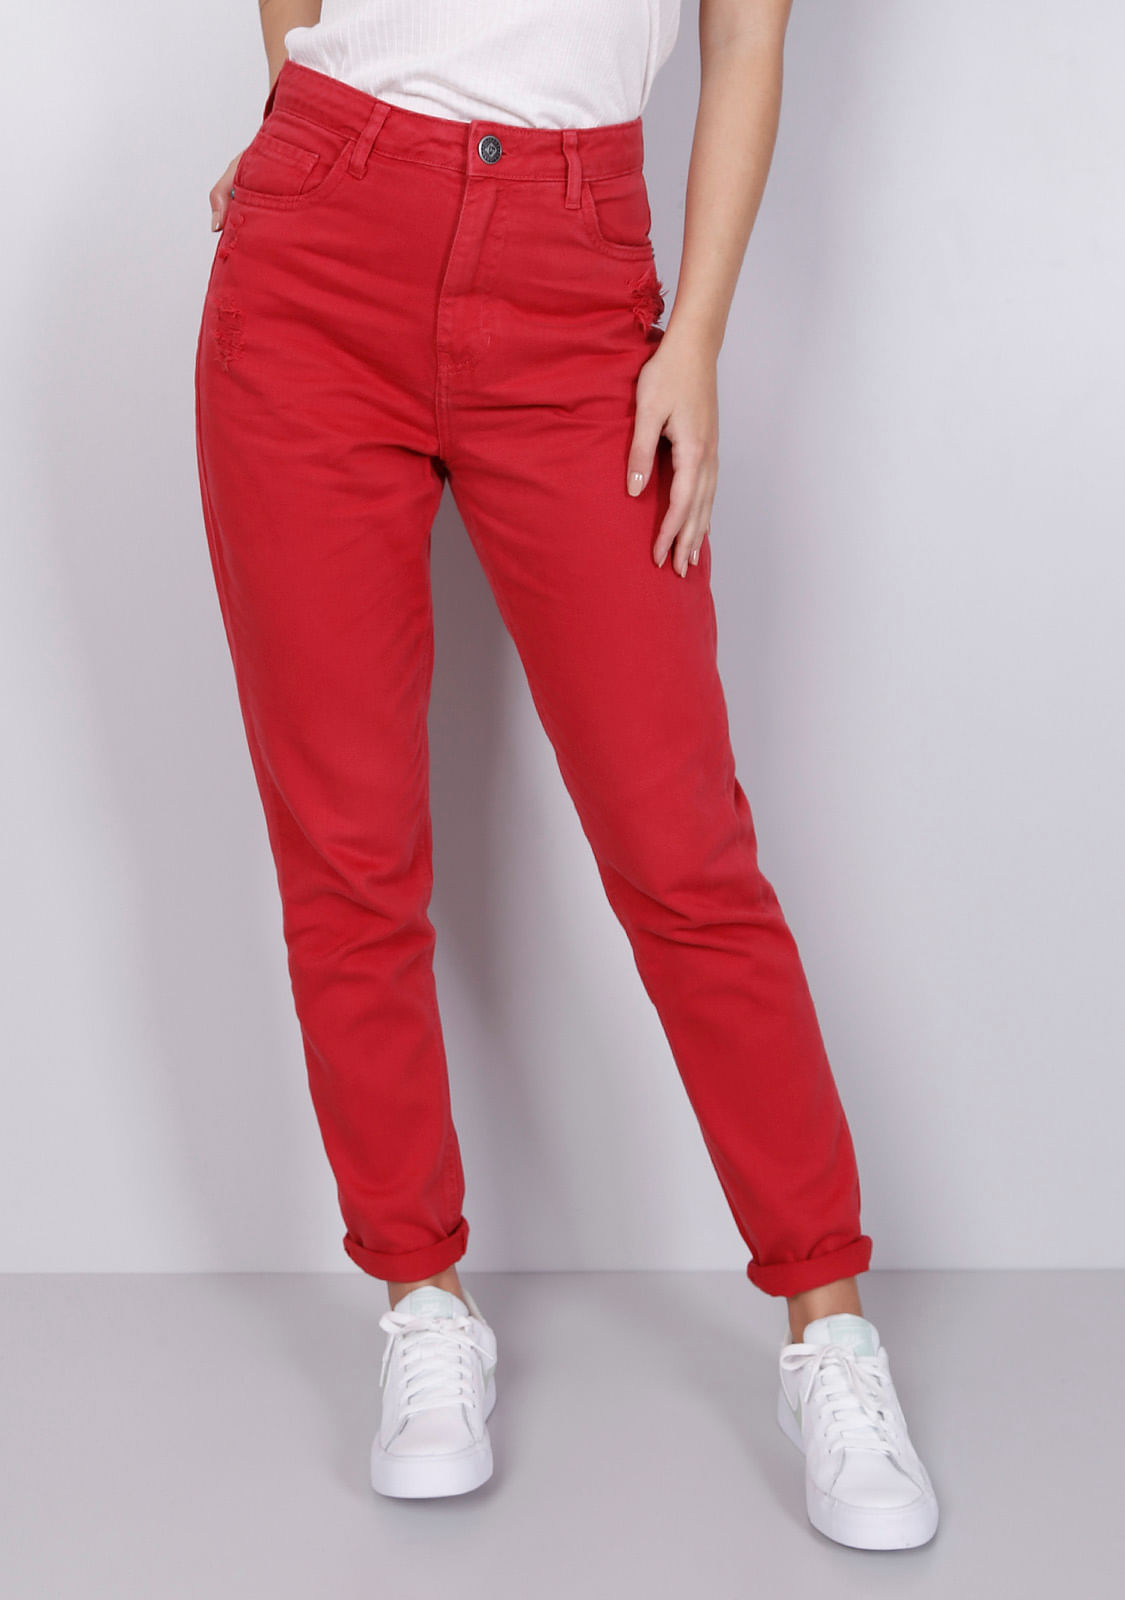 calça vermelha jeans